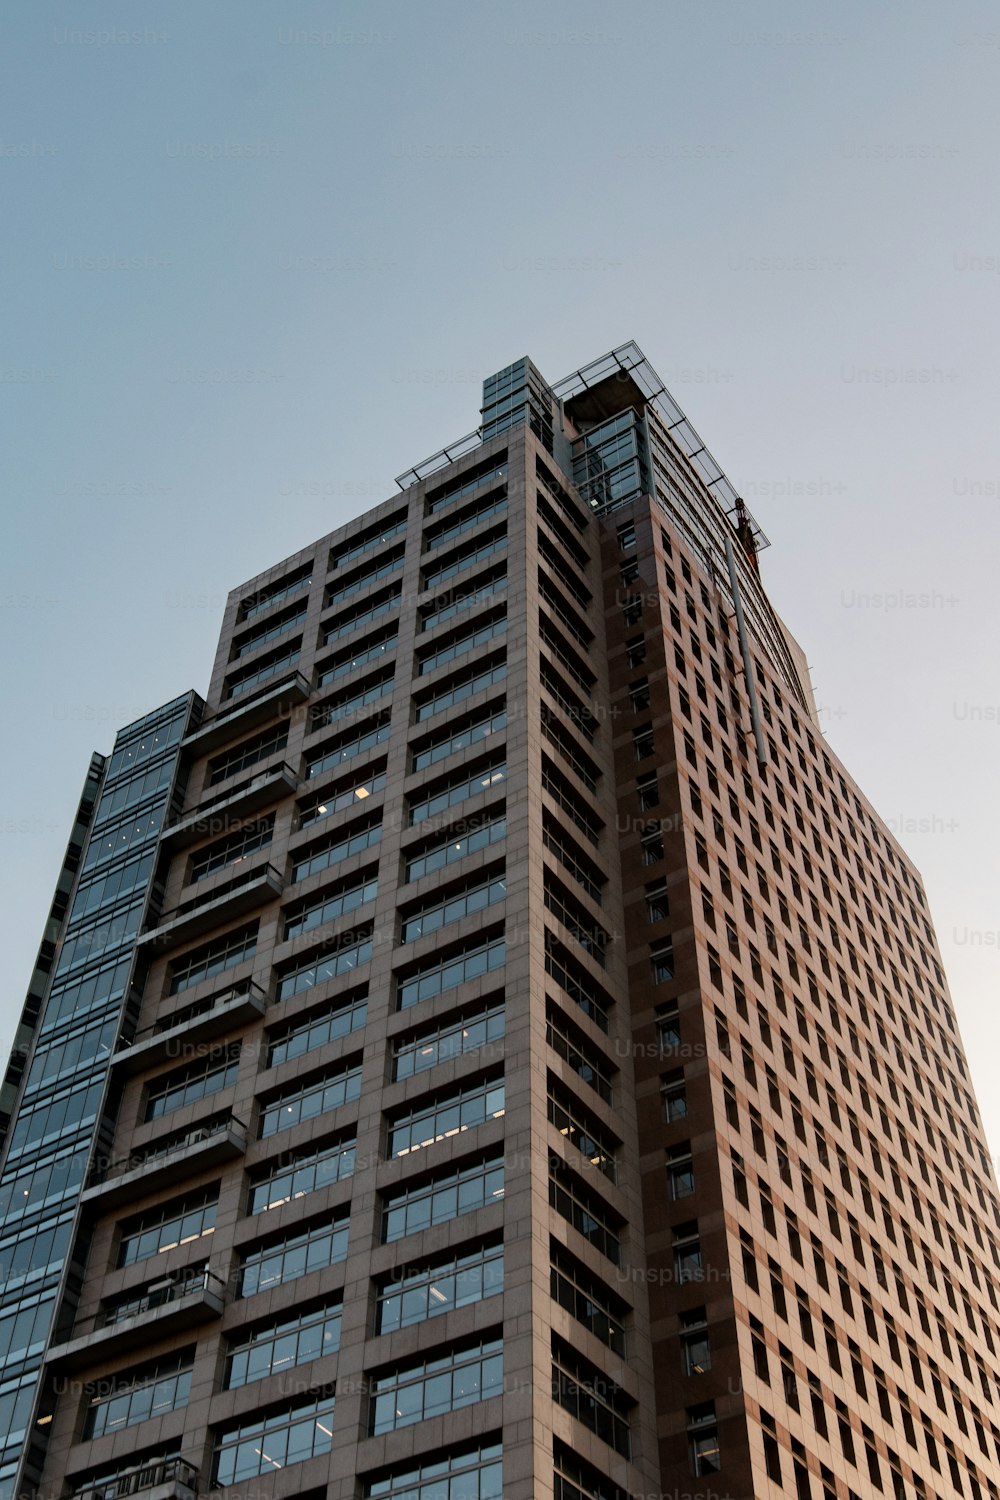 Un edificio alto de color marrón con muchas ventanas